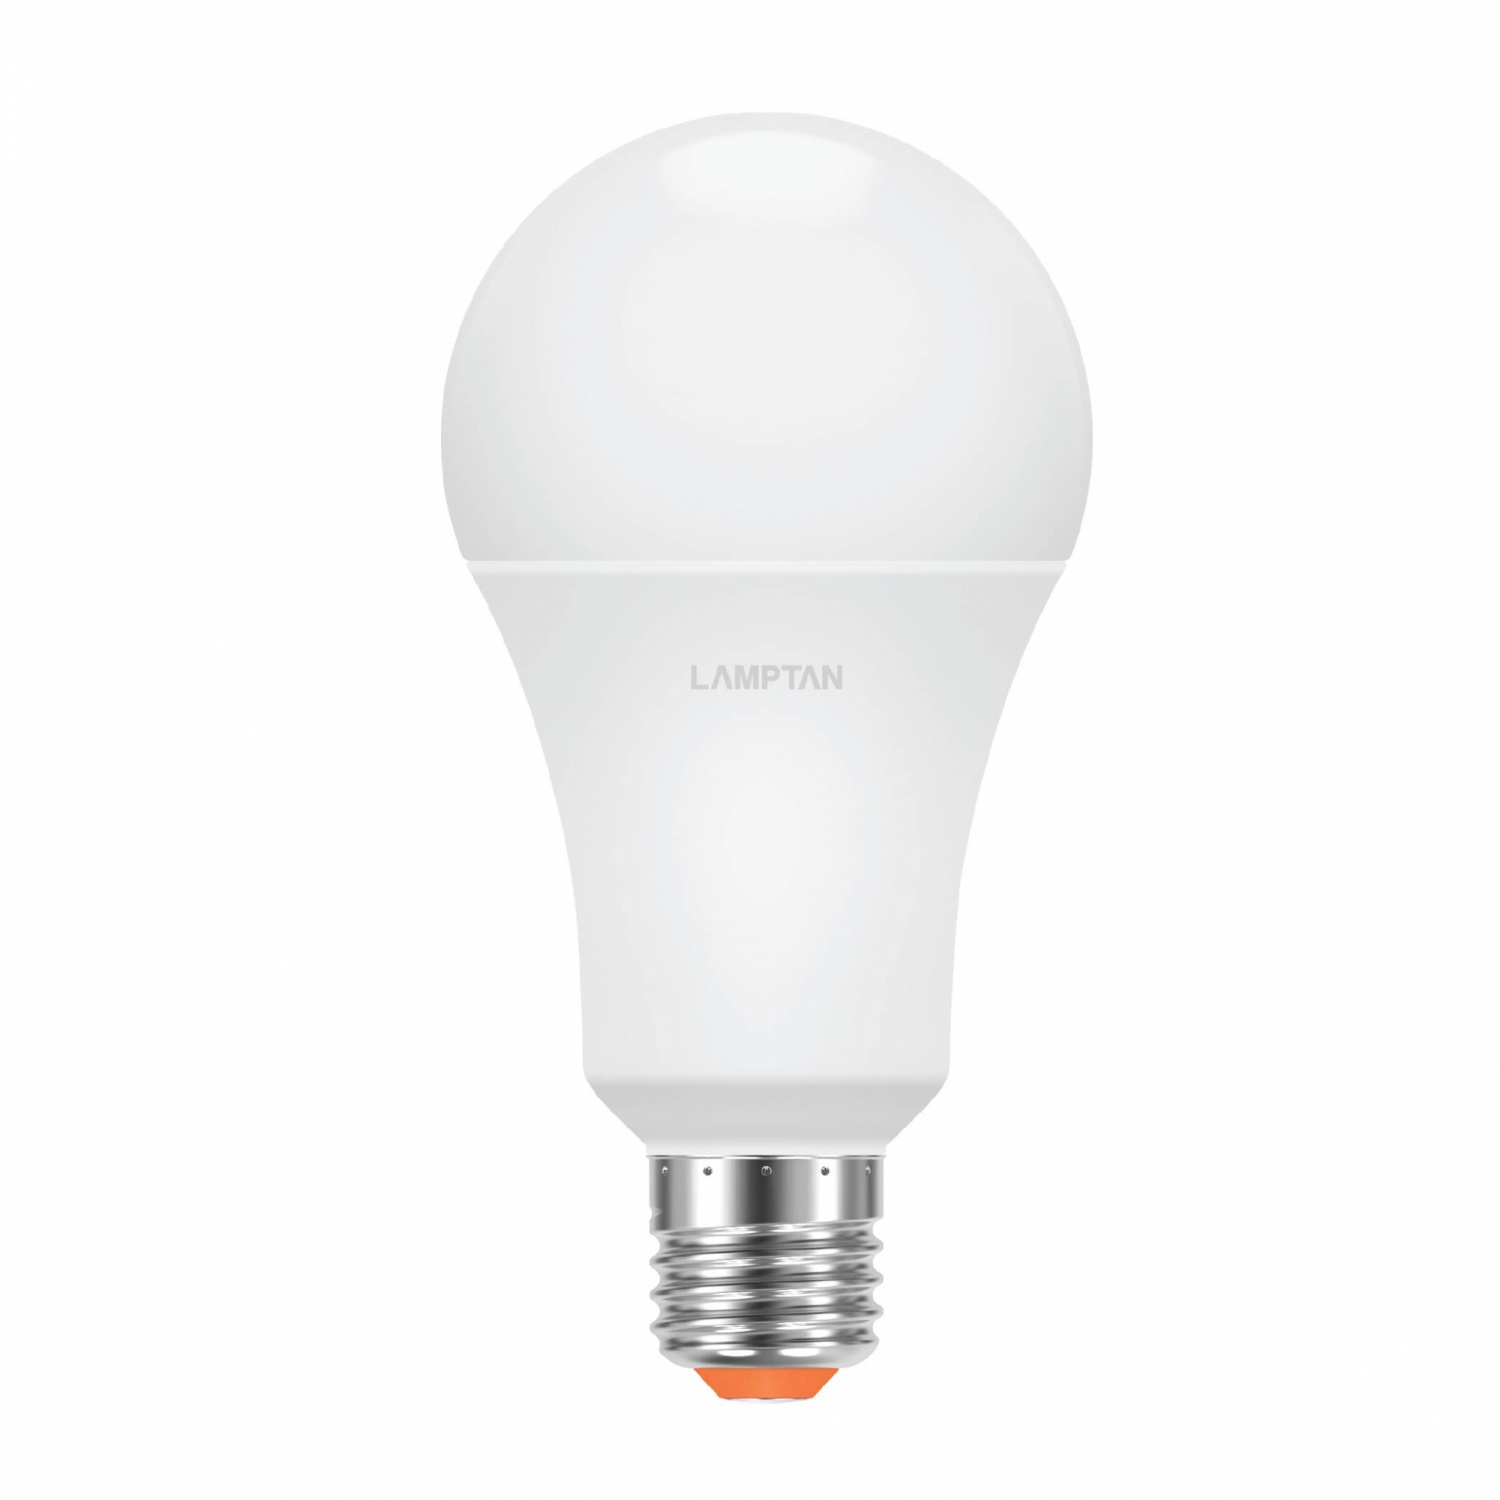 LAMPTAN หลอดไฟ LED BULB PAPER BOX 12W E27แสงเดย์ไลท์ (แพ็ค 6)